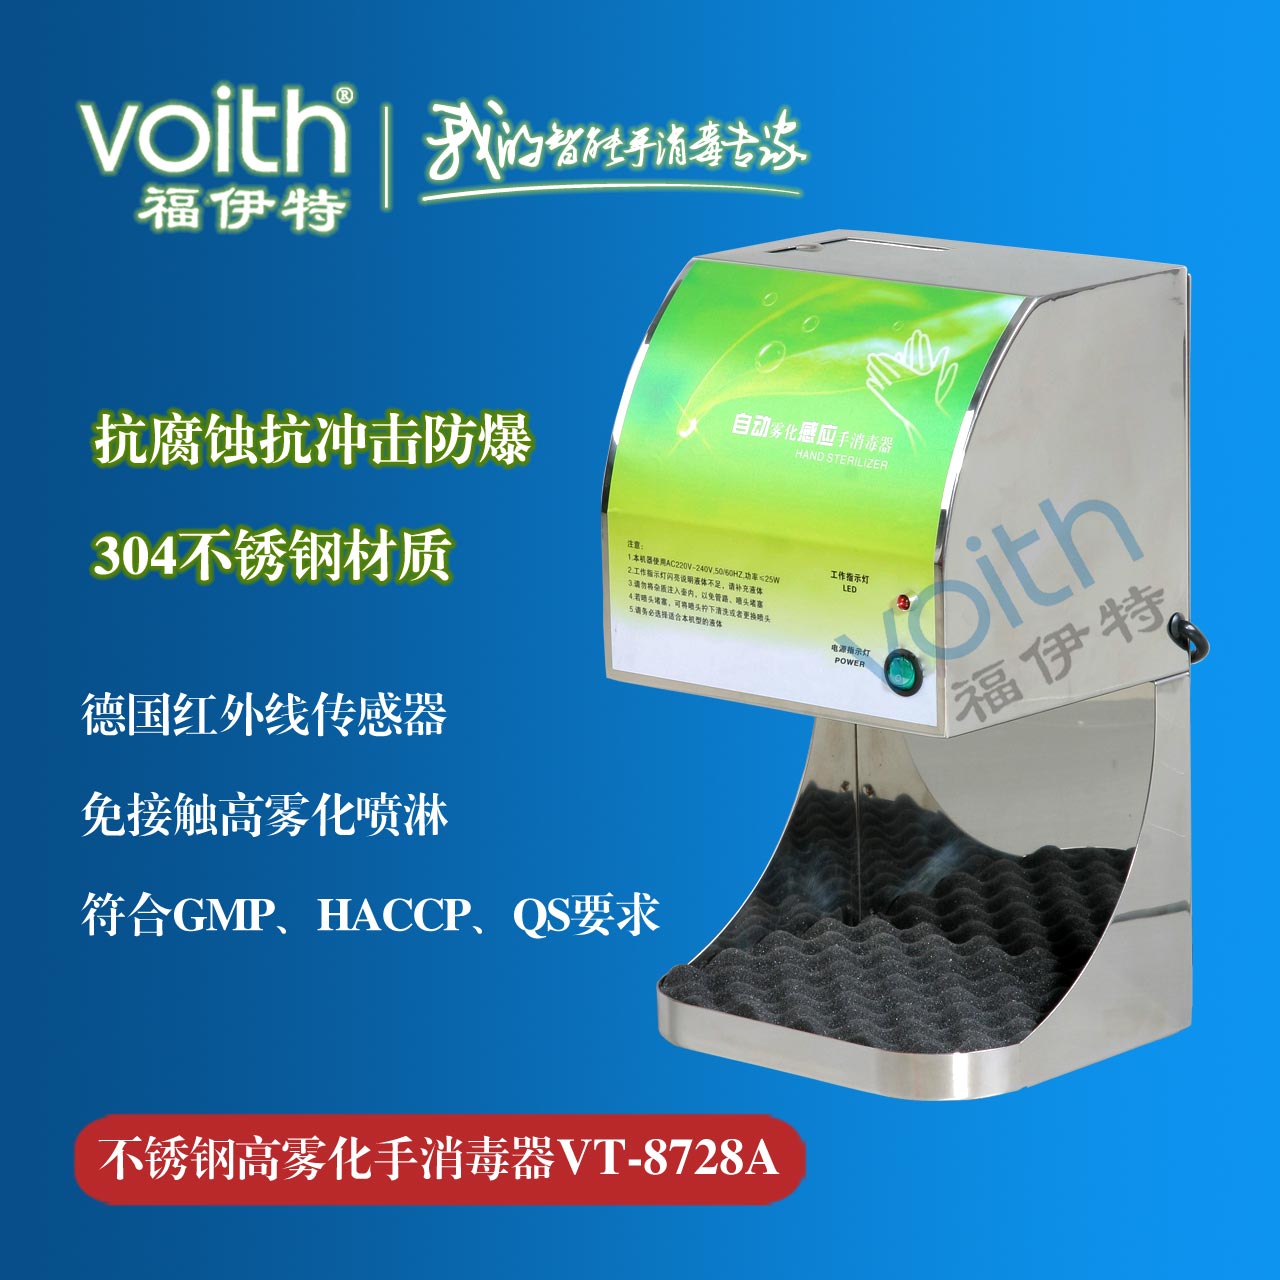 自动手消毒机哪个品牌好 安徽合肥VOITH福伊特质量